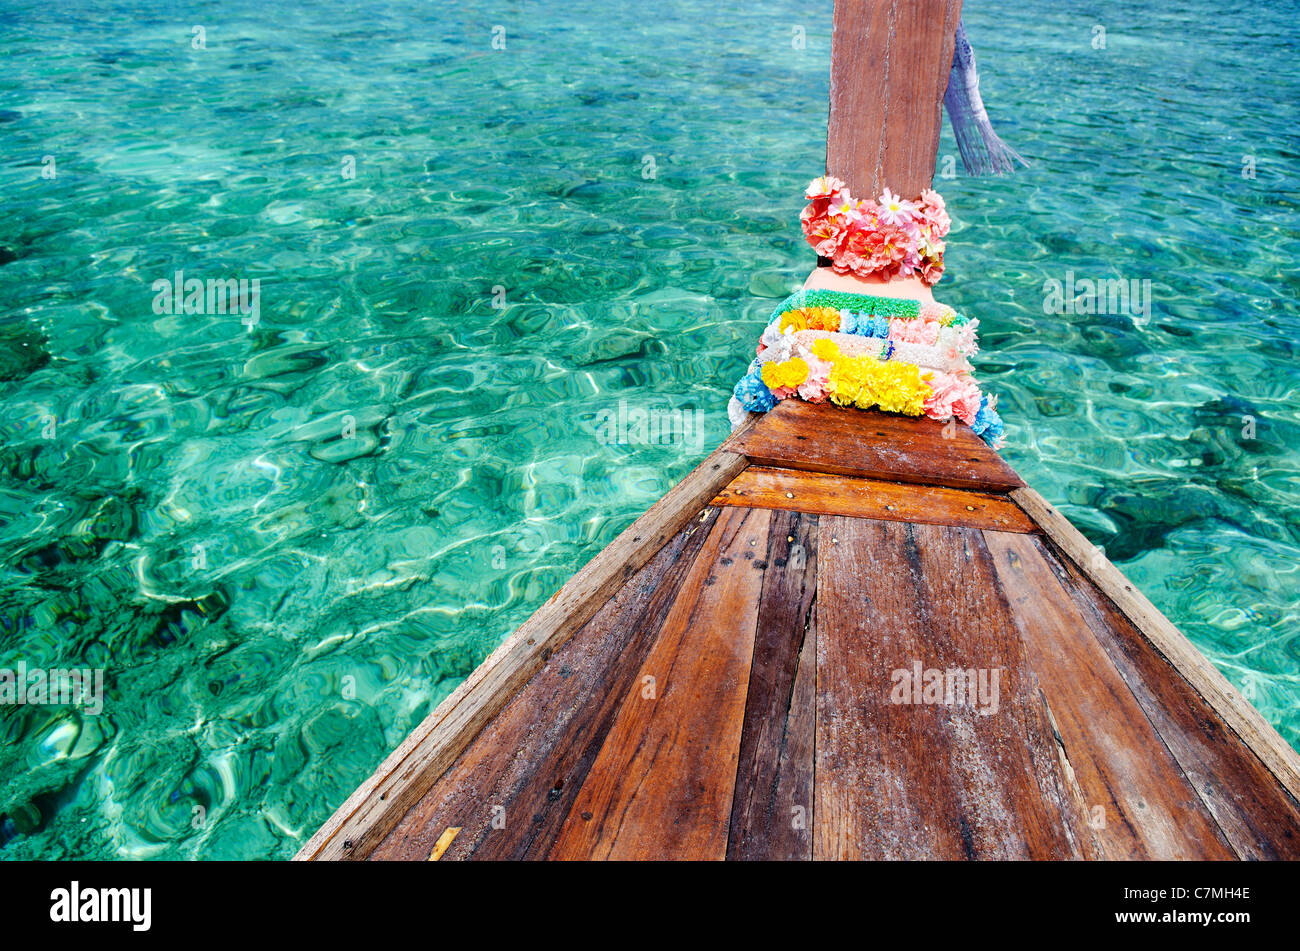 L'eau de mer tropical turquoise et bateau thaï Banque D'Images